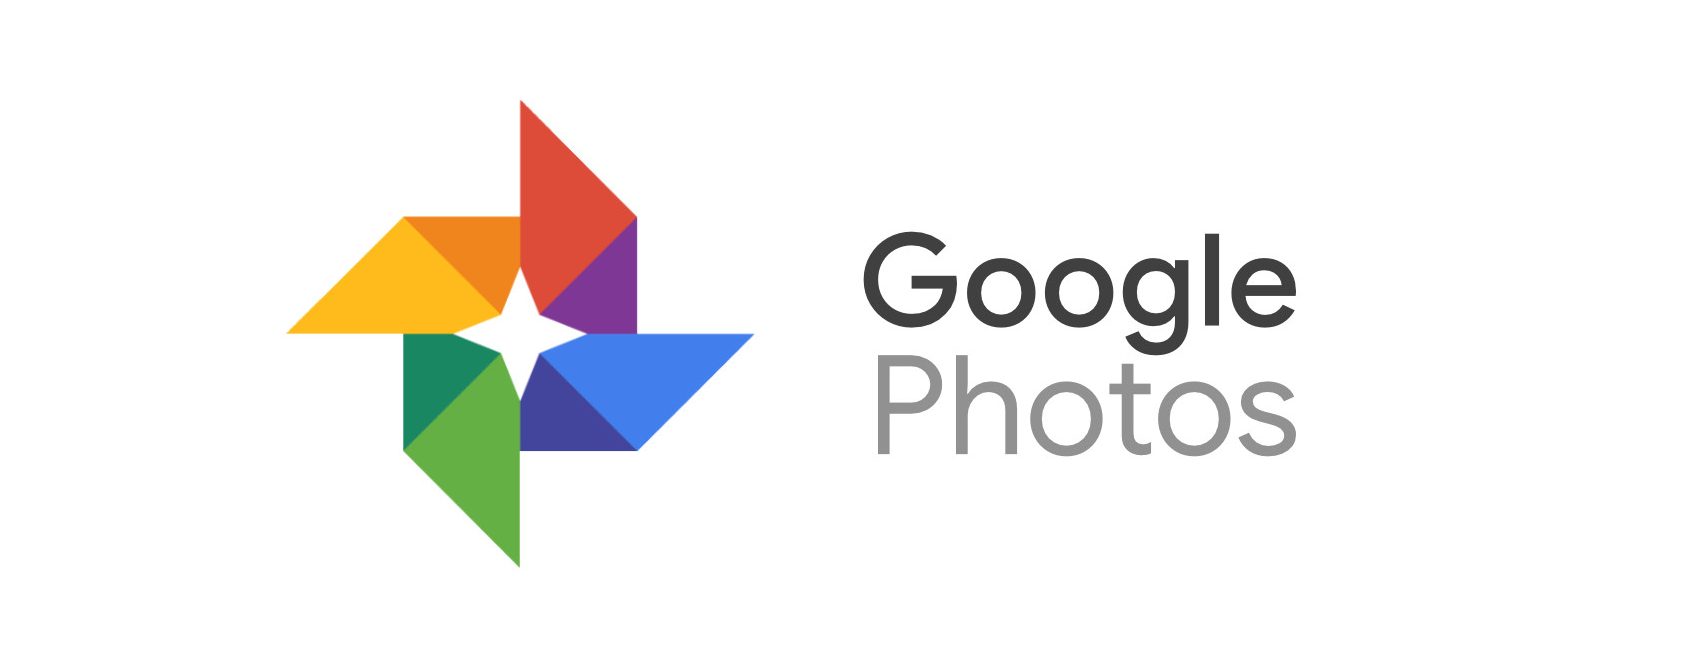 Google predstavuje novú službu, ktorá vyberá a tlačí z vašej aplikácie Fotky Google